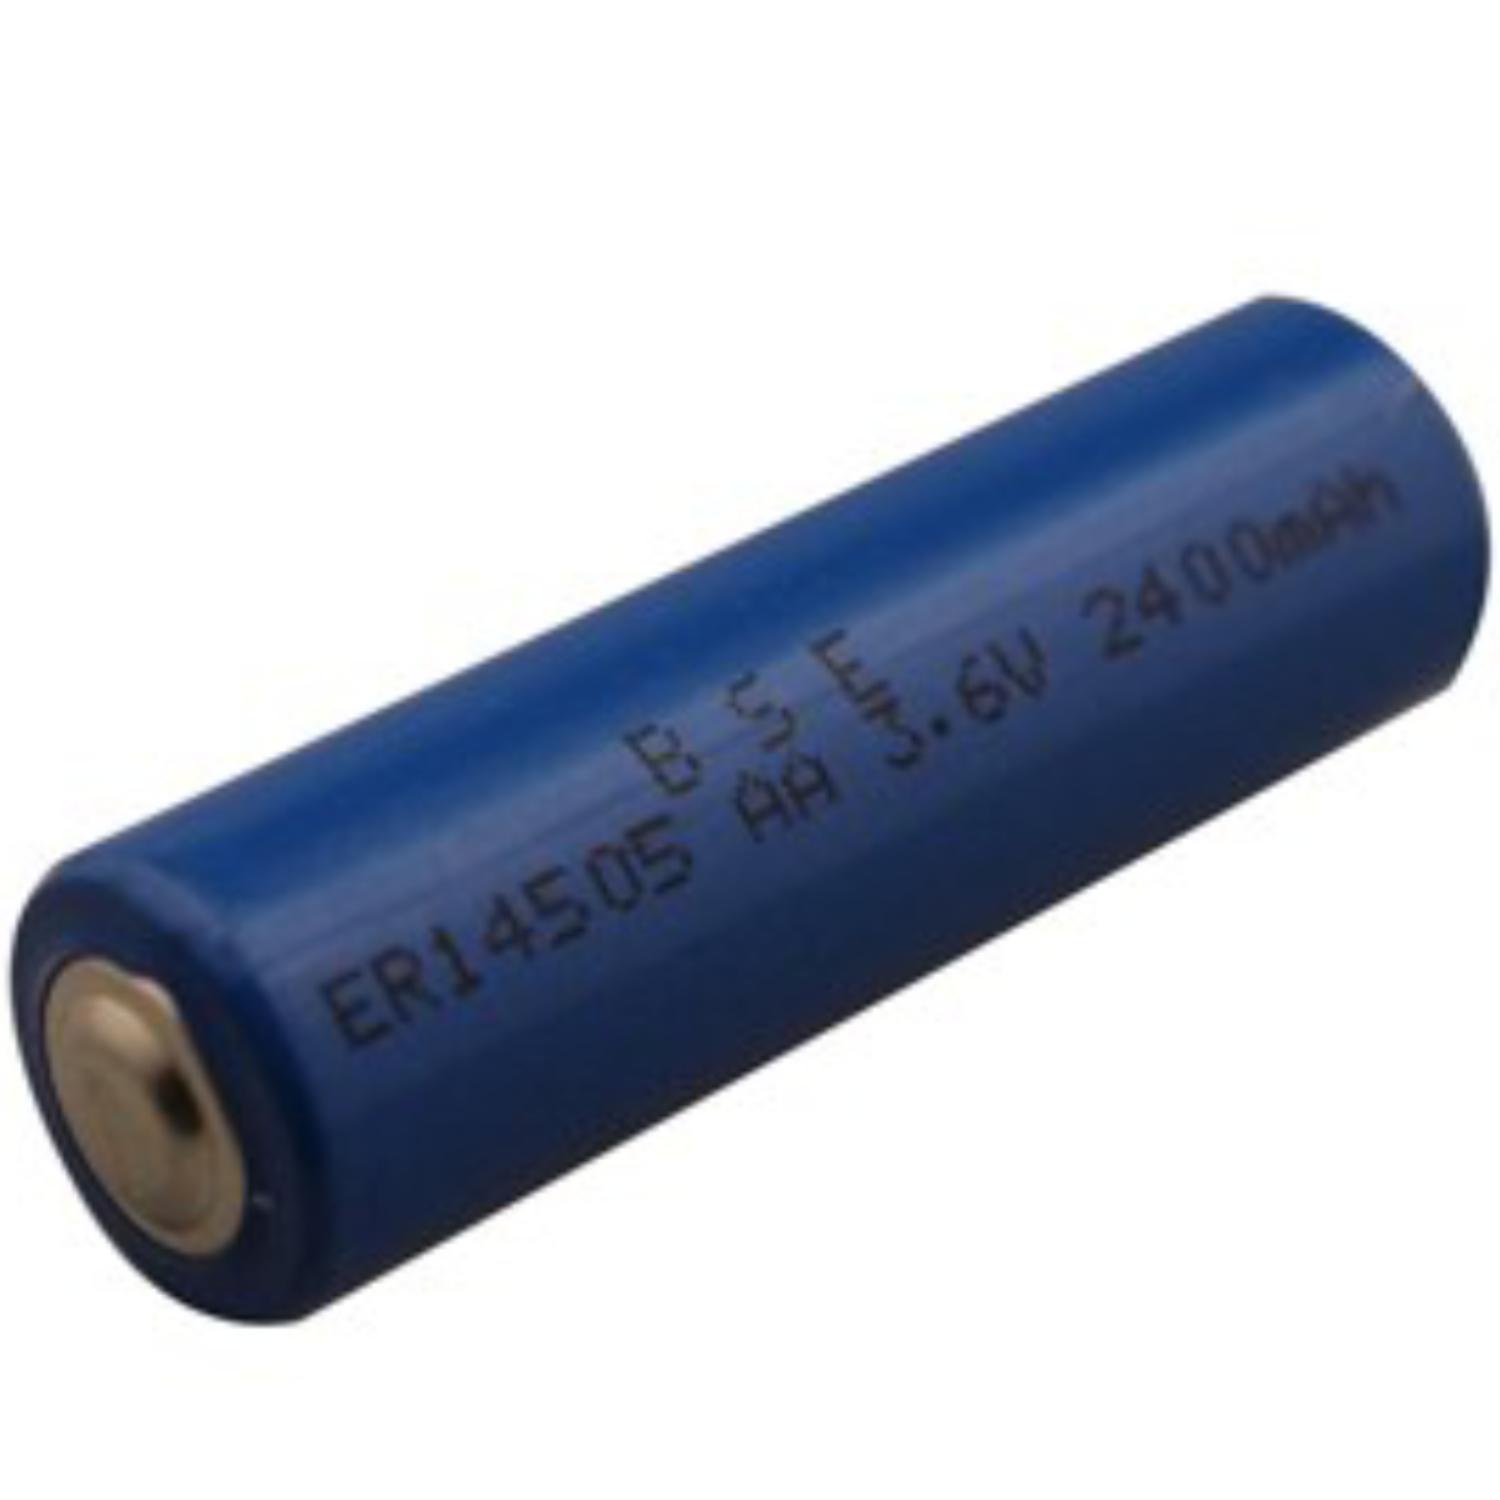 Elektropositief criticus Schildknaap AA Batterij - Lithium - Aantal: 1 batterij, IEC code: FR06, MN1500.  Spanning: 3.6 volt, Capaciteit: 2400mAh, Merk: BSE,